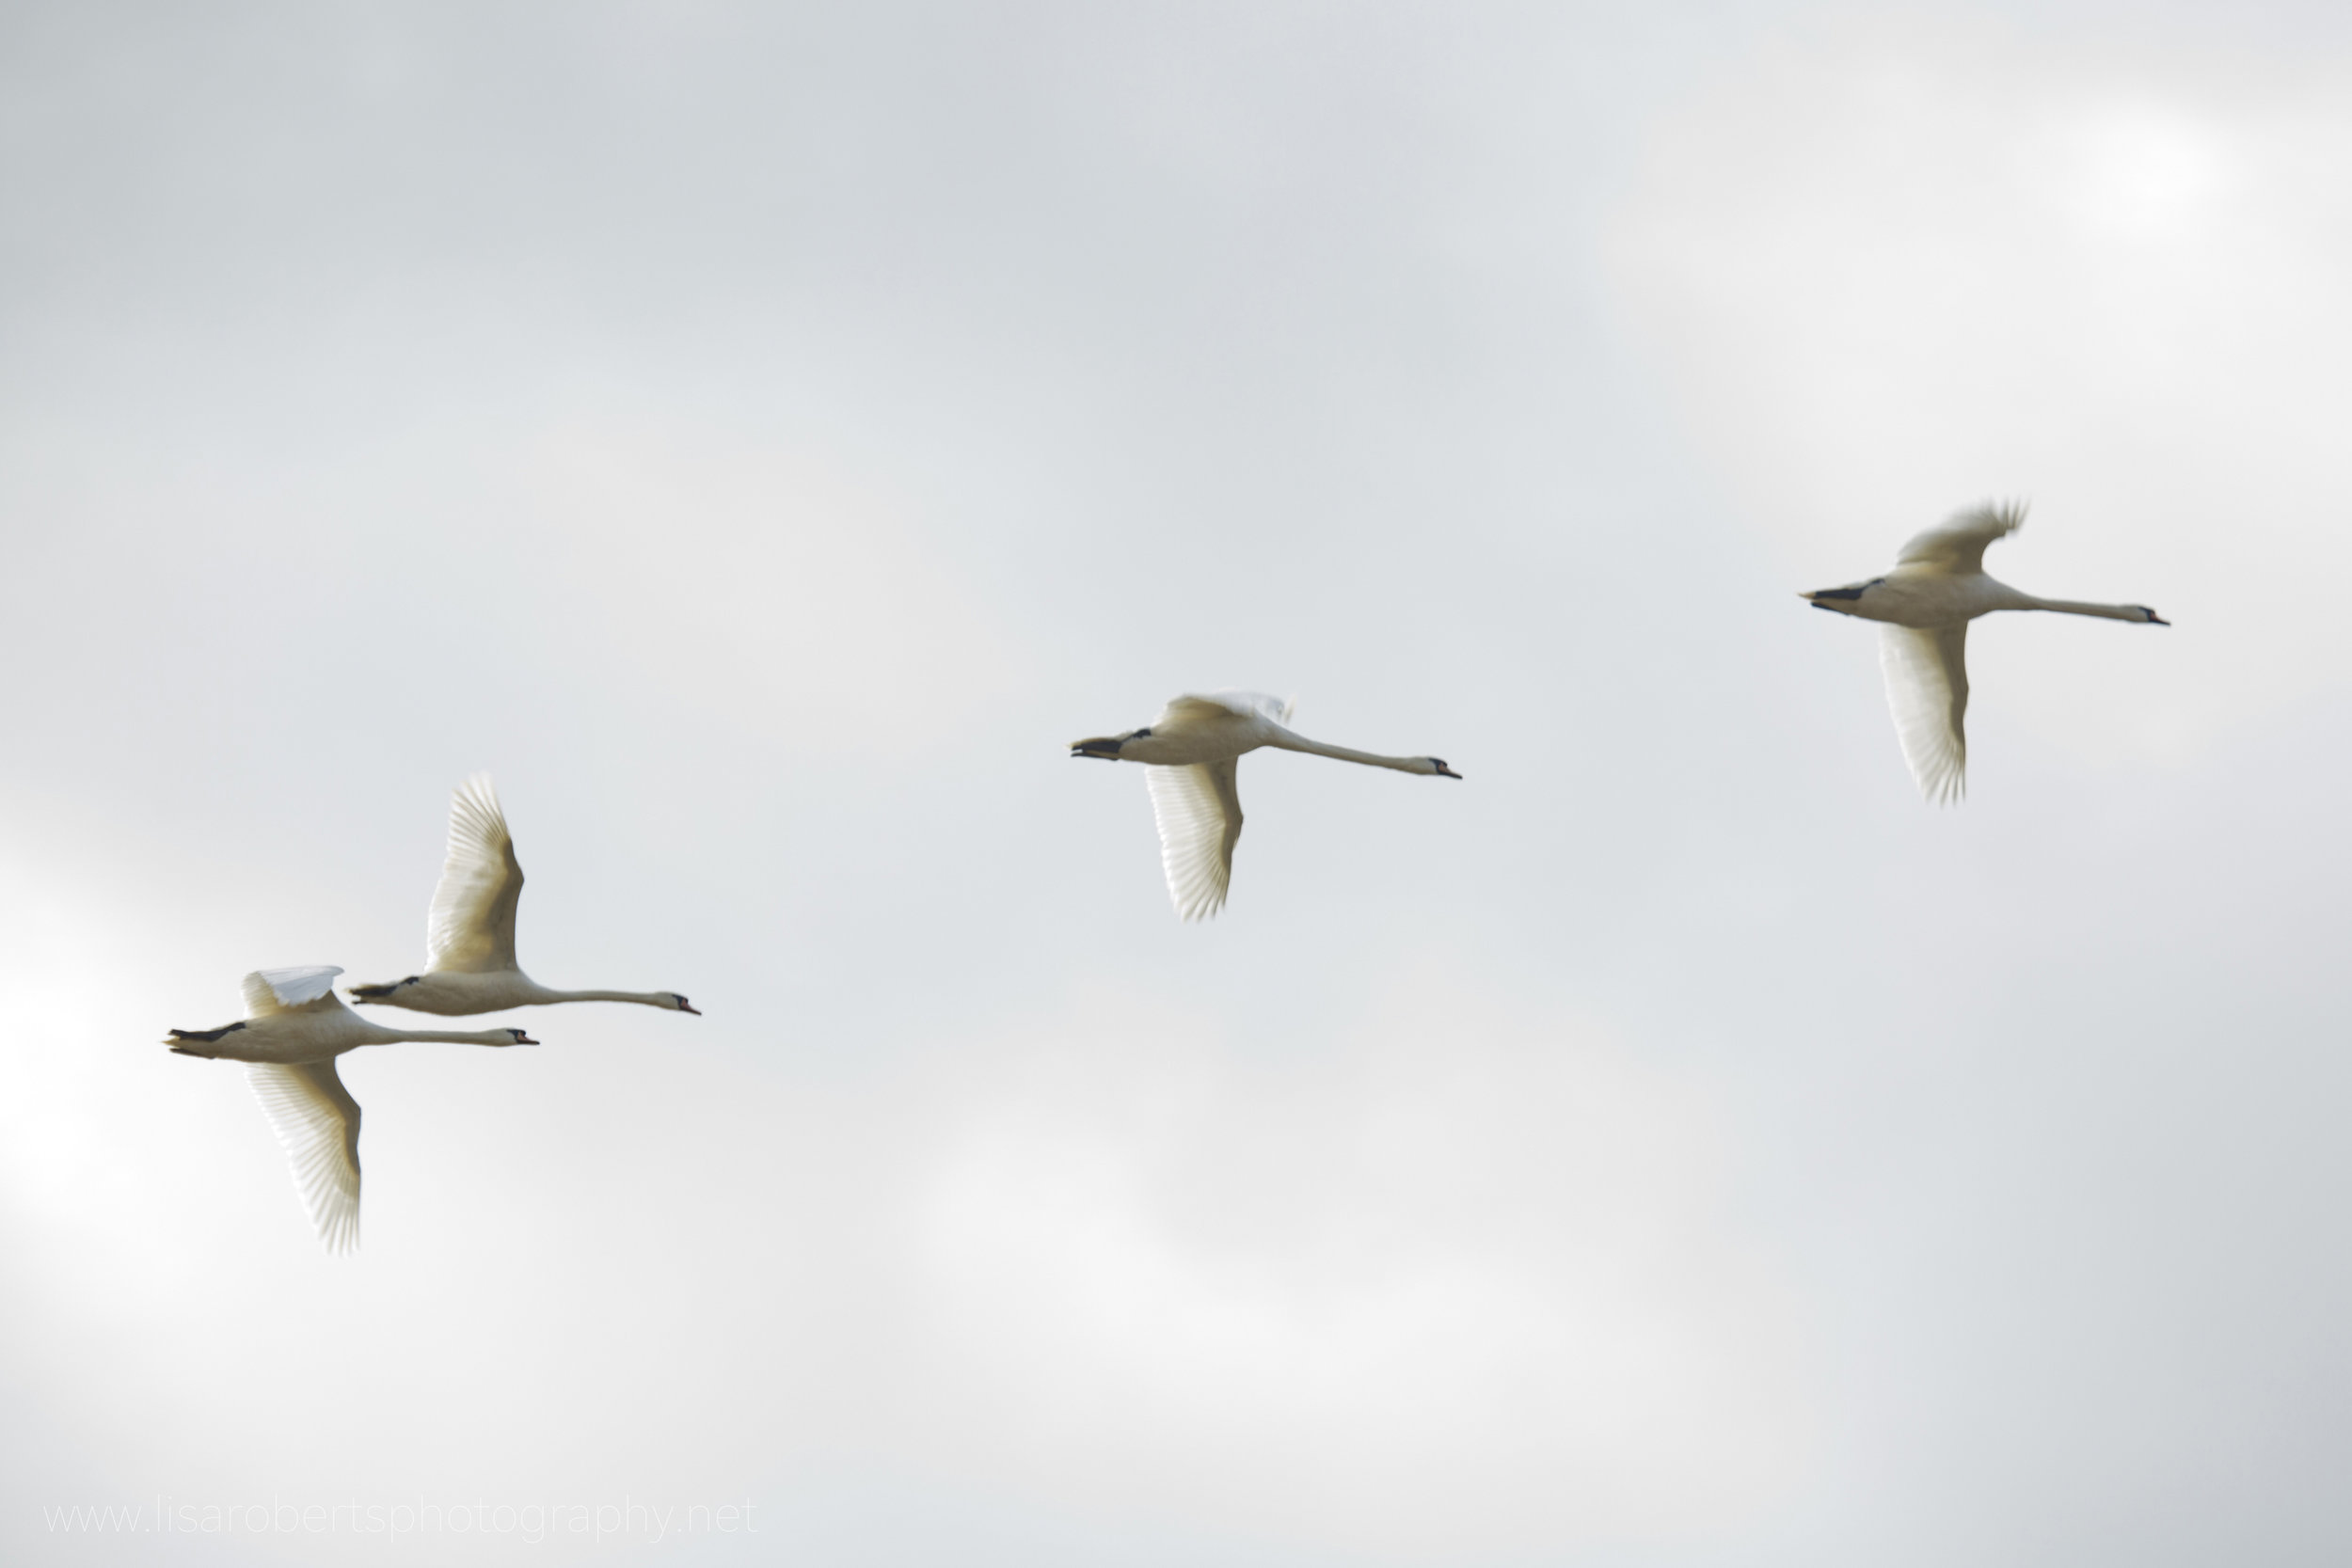  Swans in flight 